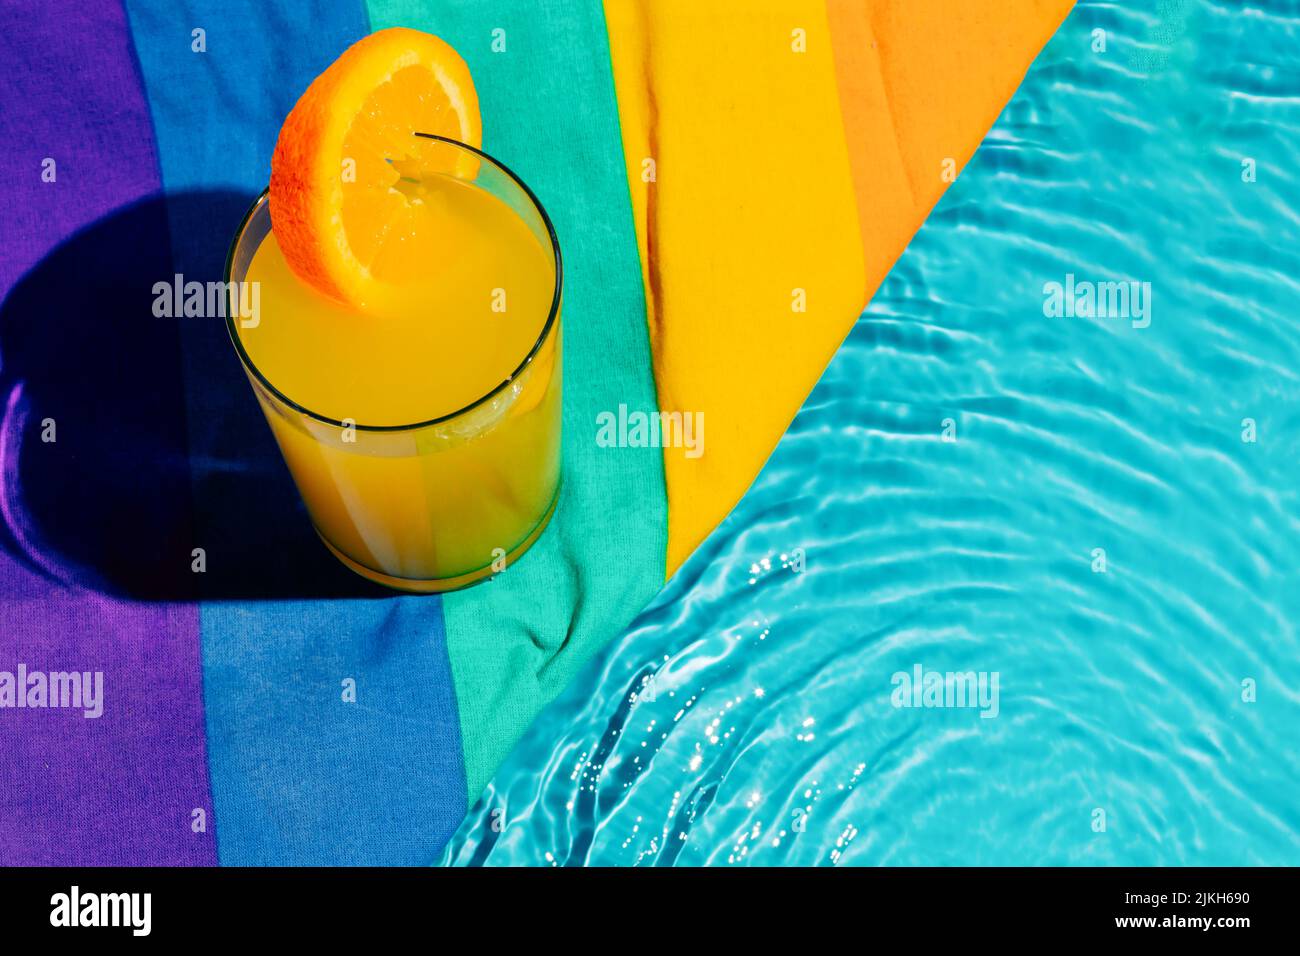 Eine Tasse Orangensaft aus einem hohen Winkel mit orangefarbener Scheibe neben einem farbenfrohen Tuch am Pool Stockfoto